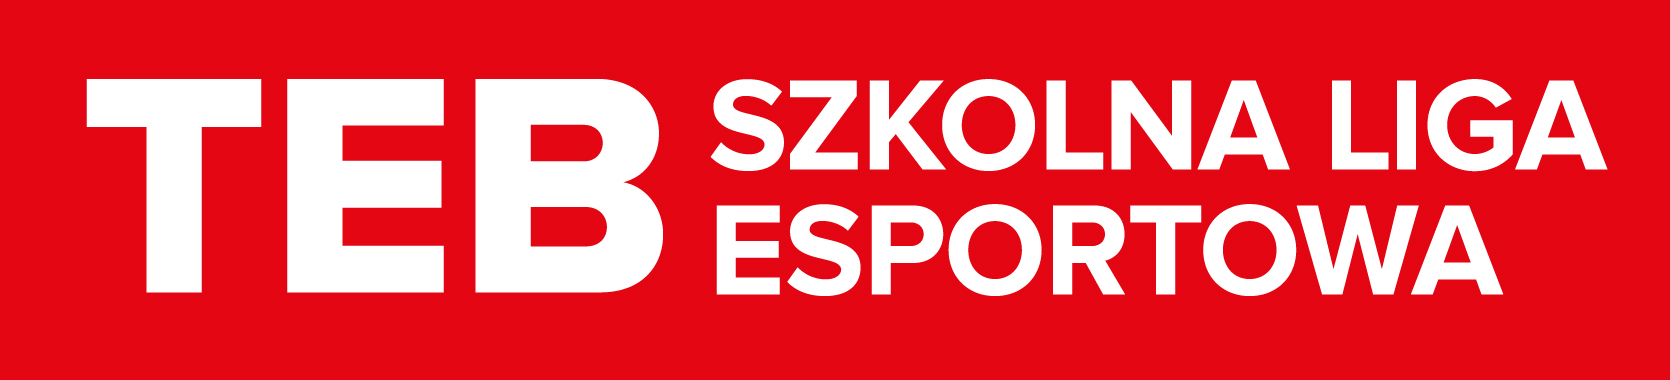 TEB Szkolna Liga E-sportowa – SEZON 0thumbnail